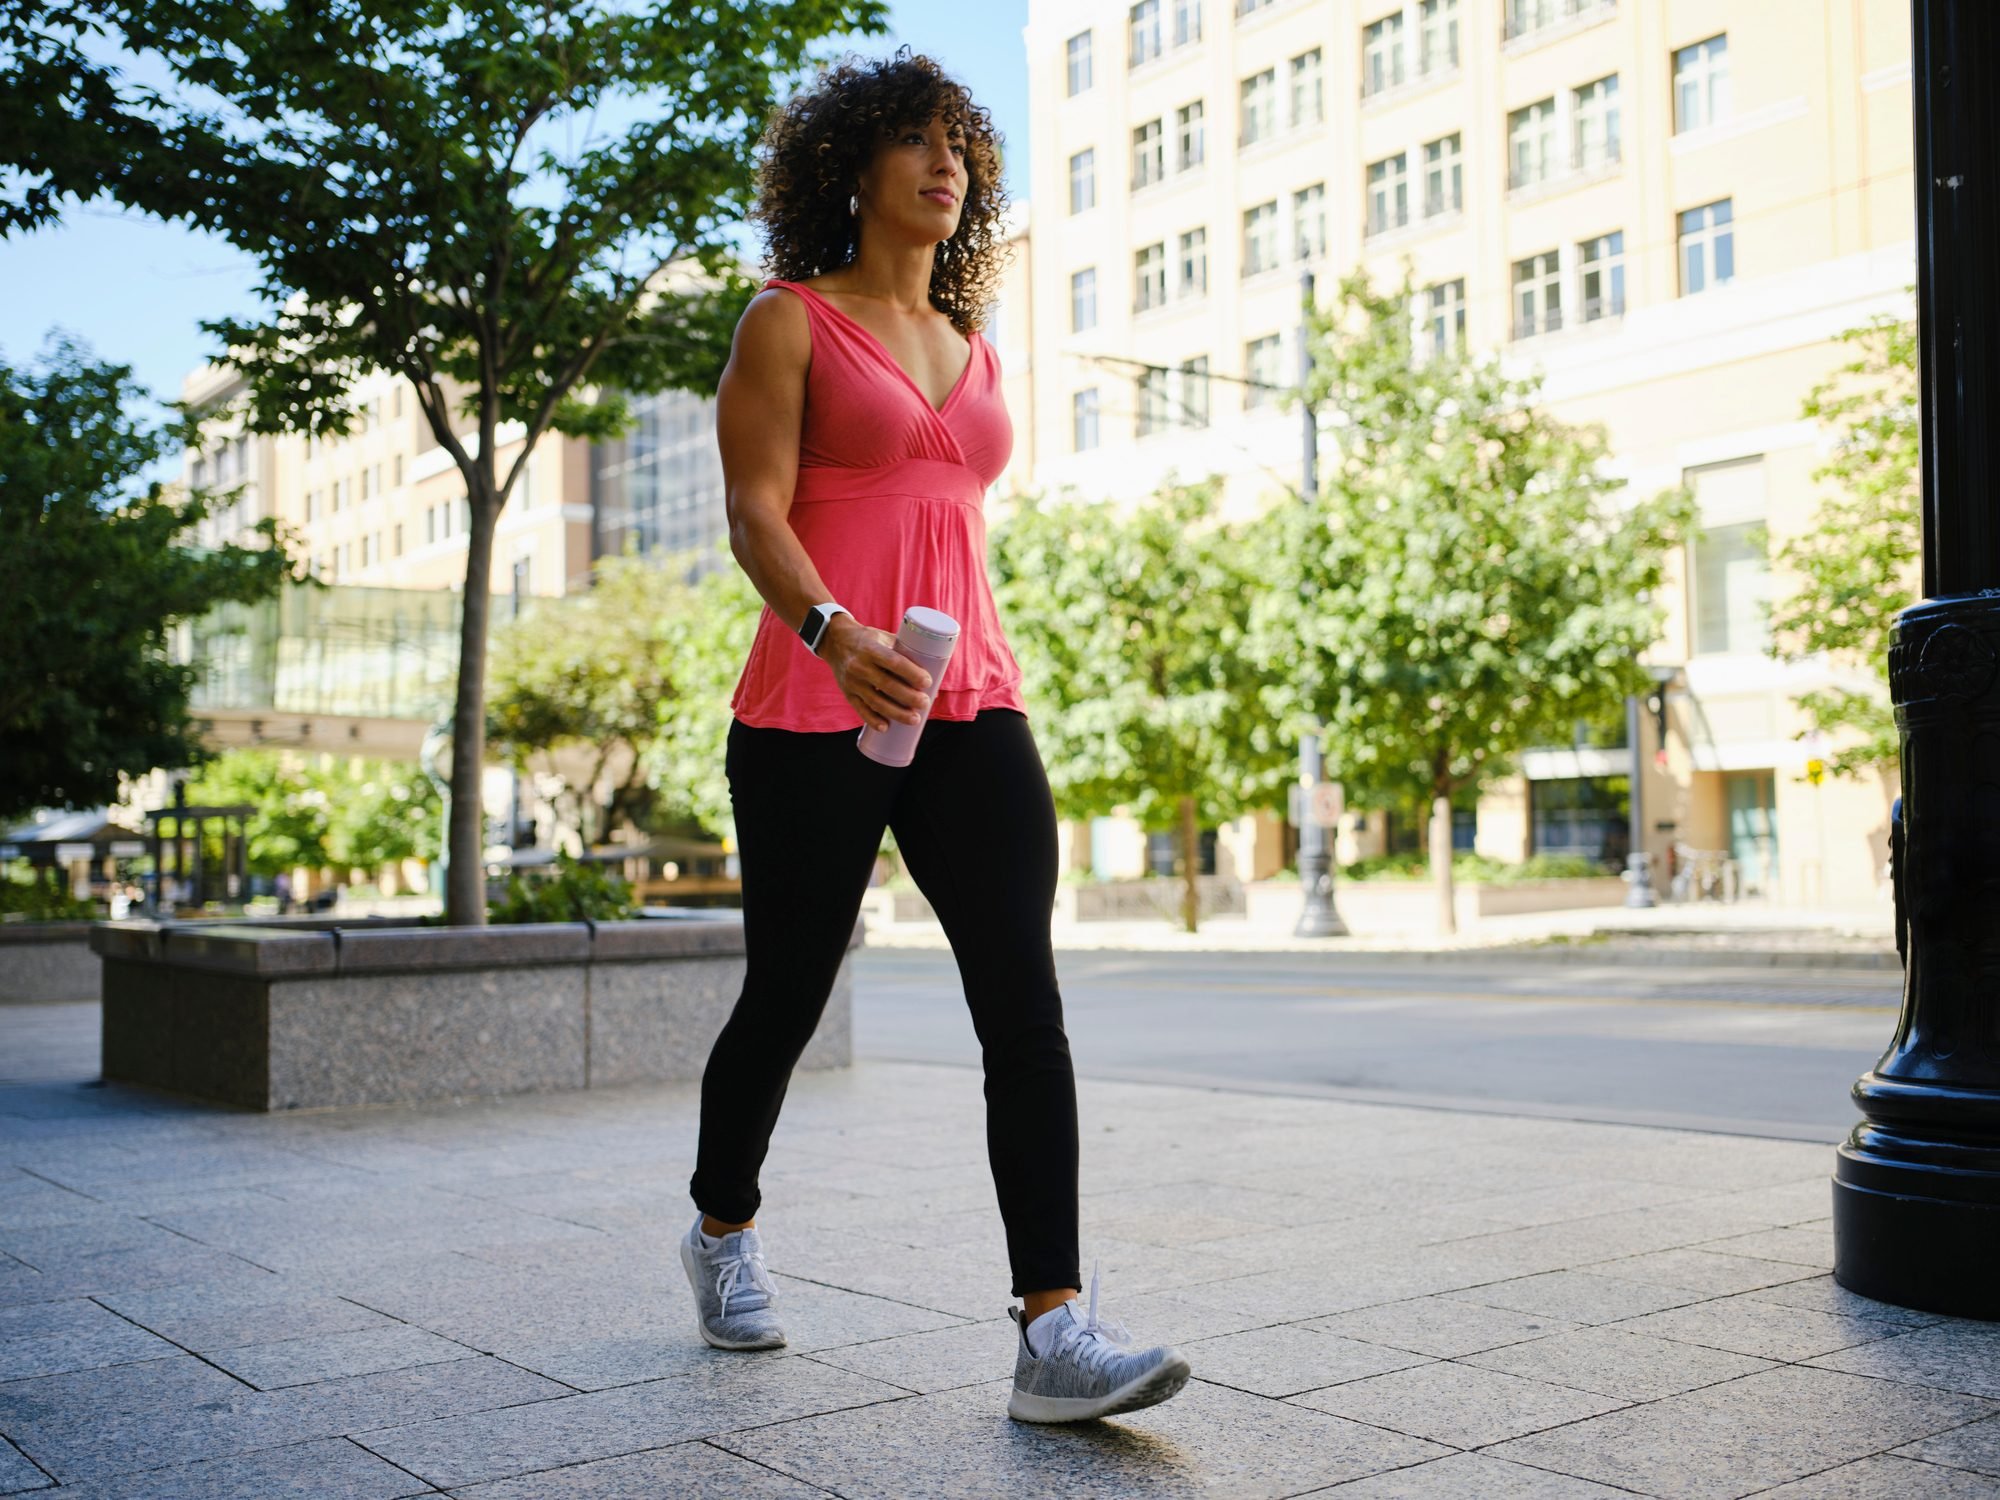  Mujer Adulta Joven que camina afuera para hacer ejercicio